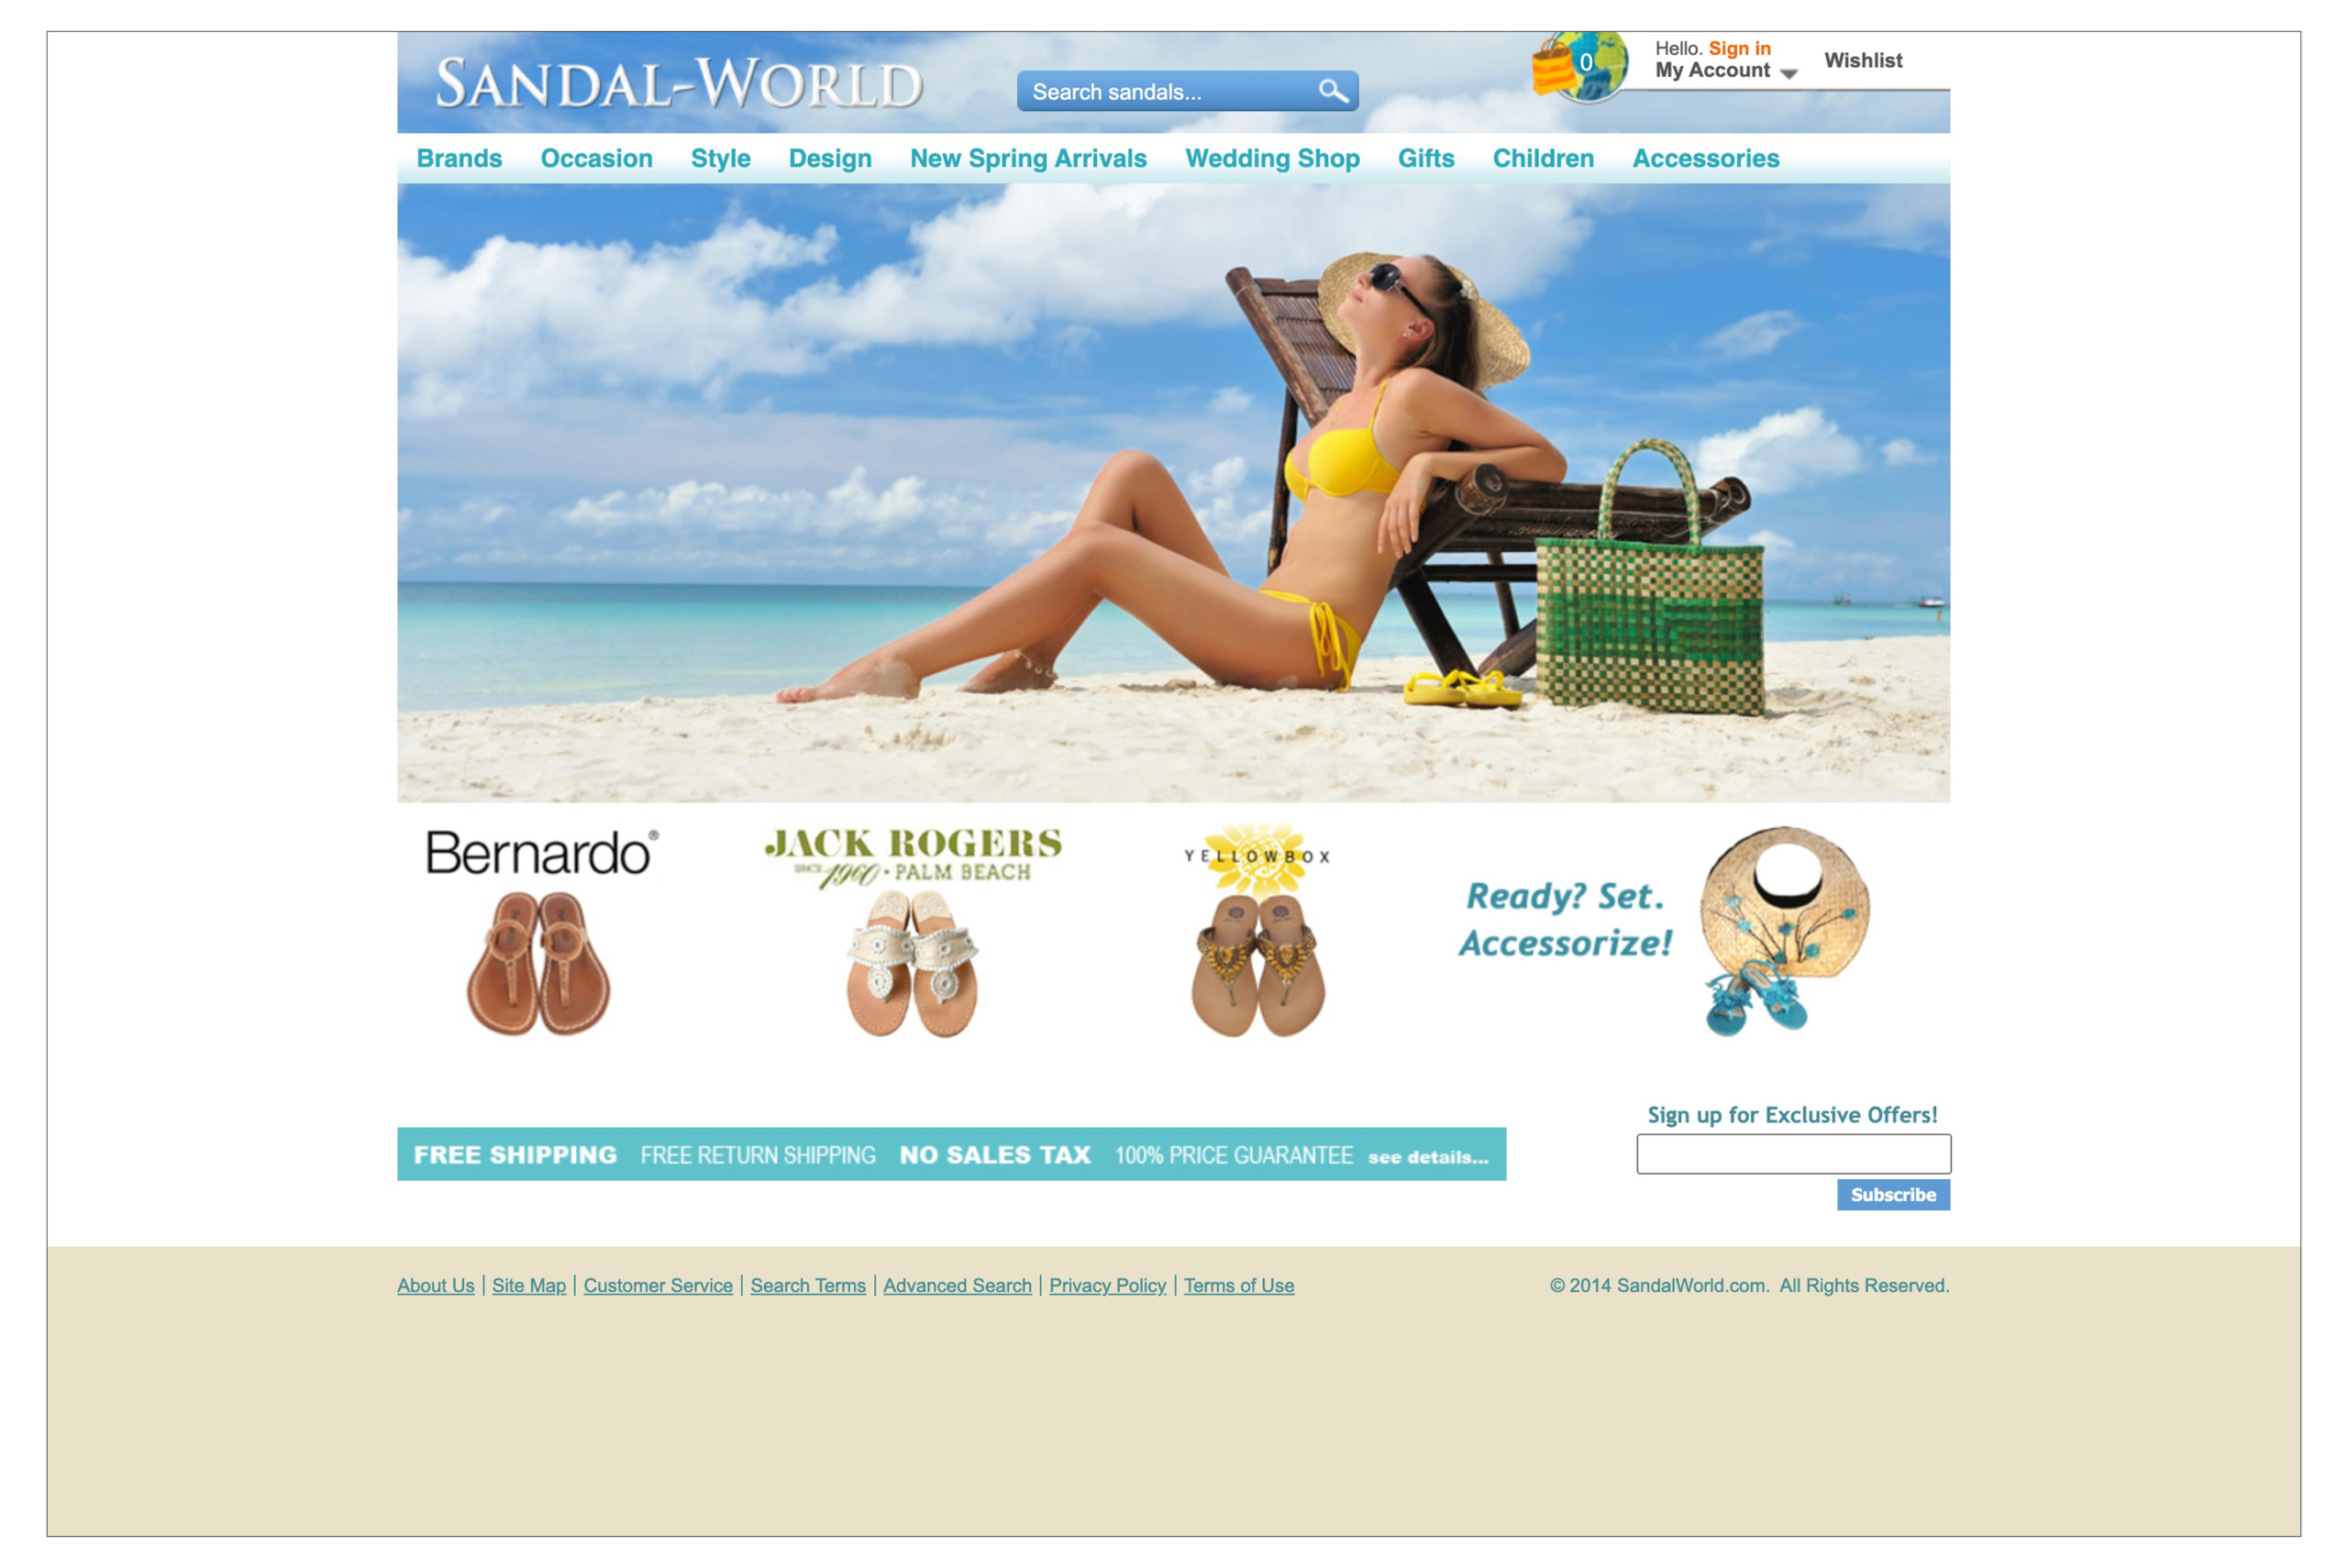 Image of Sandalworld homepage